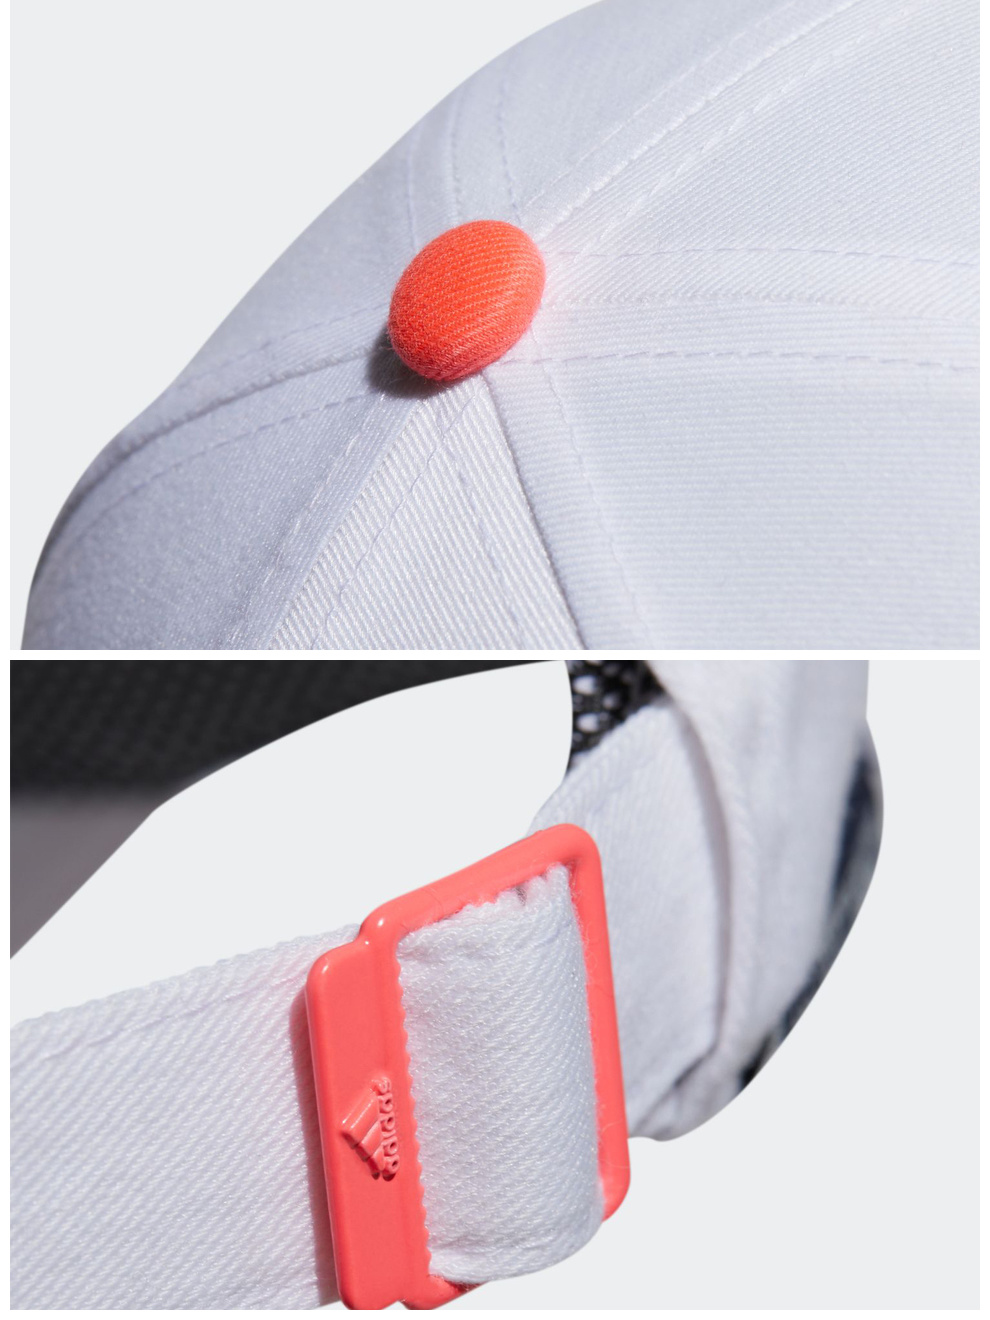 【新品】Adidas阿迪达斯高尔夫球帽女士休闲运动有顶帽FM3153白色